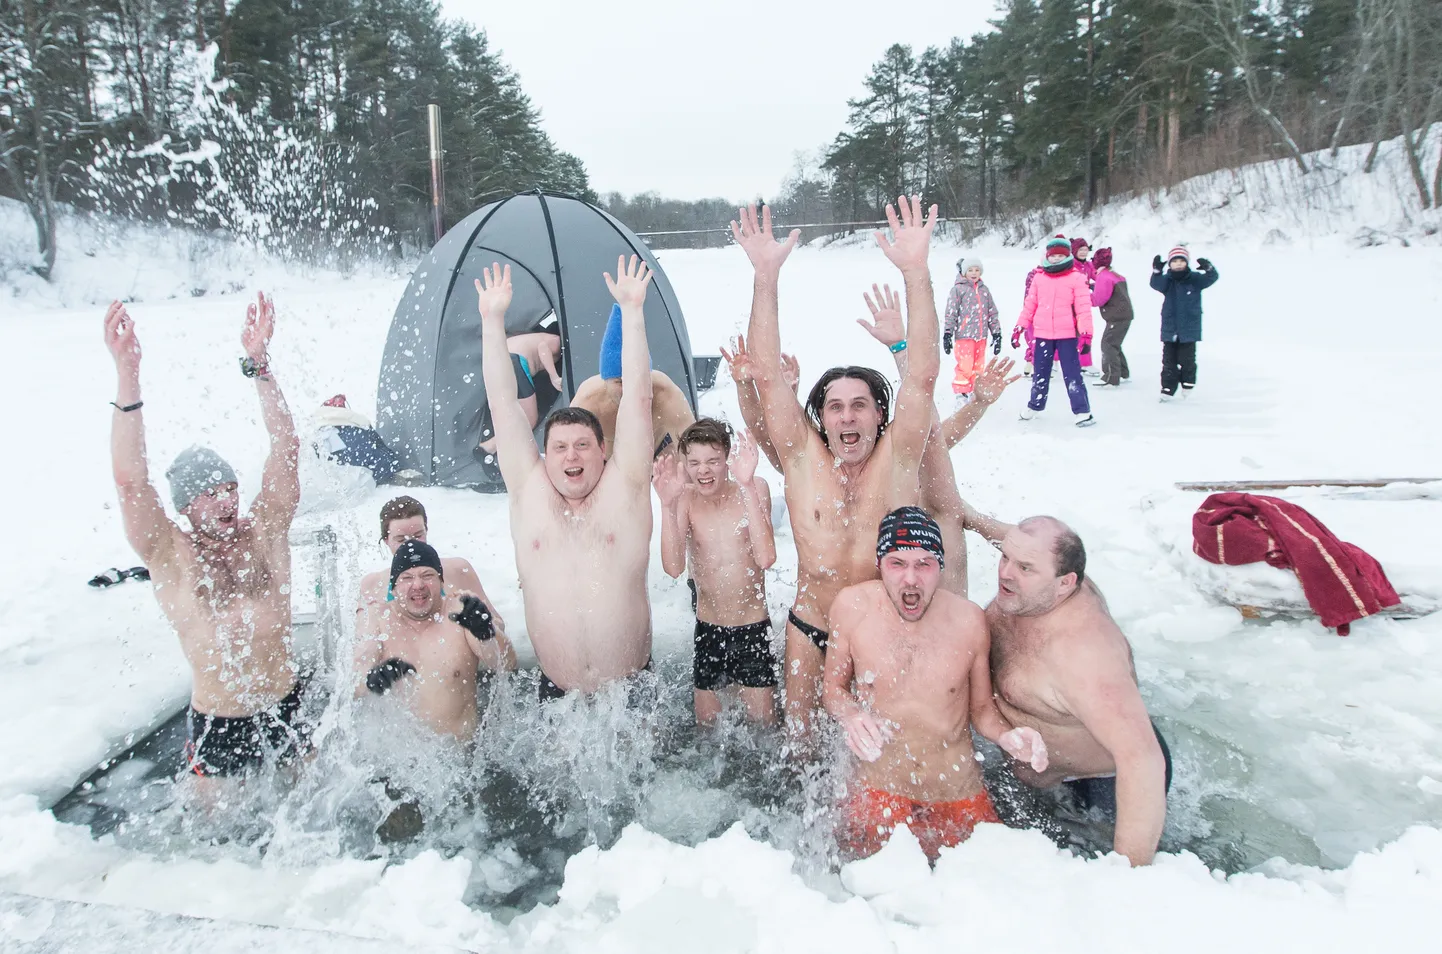 Любители зимнего купания из Вока удостоены спецпремии в категории "Учебное дело года".